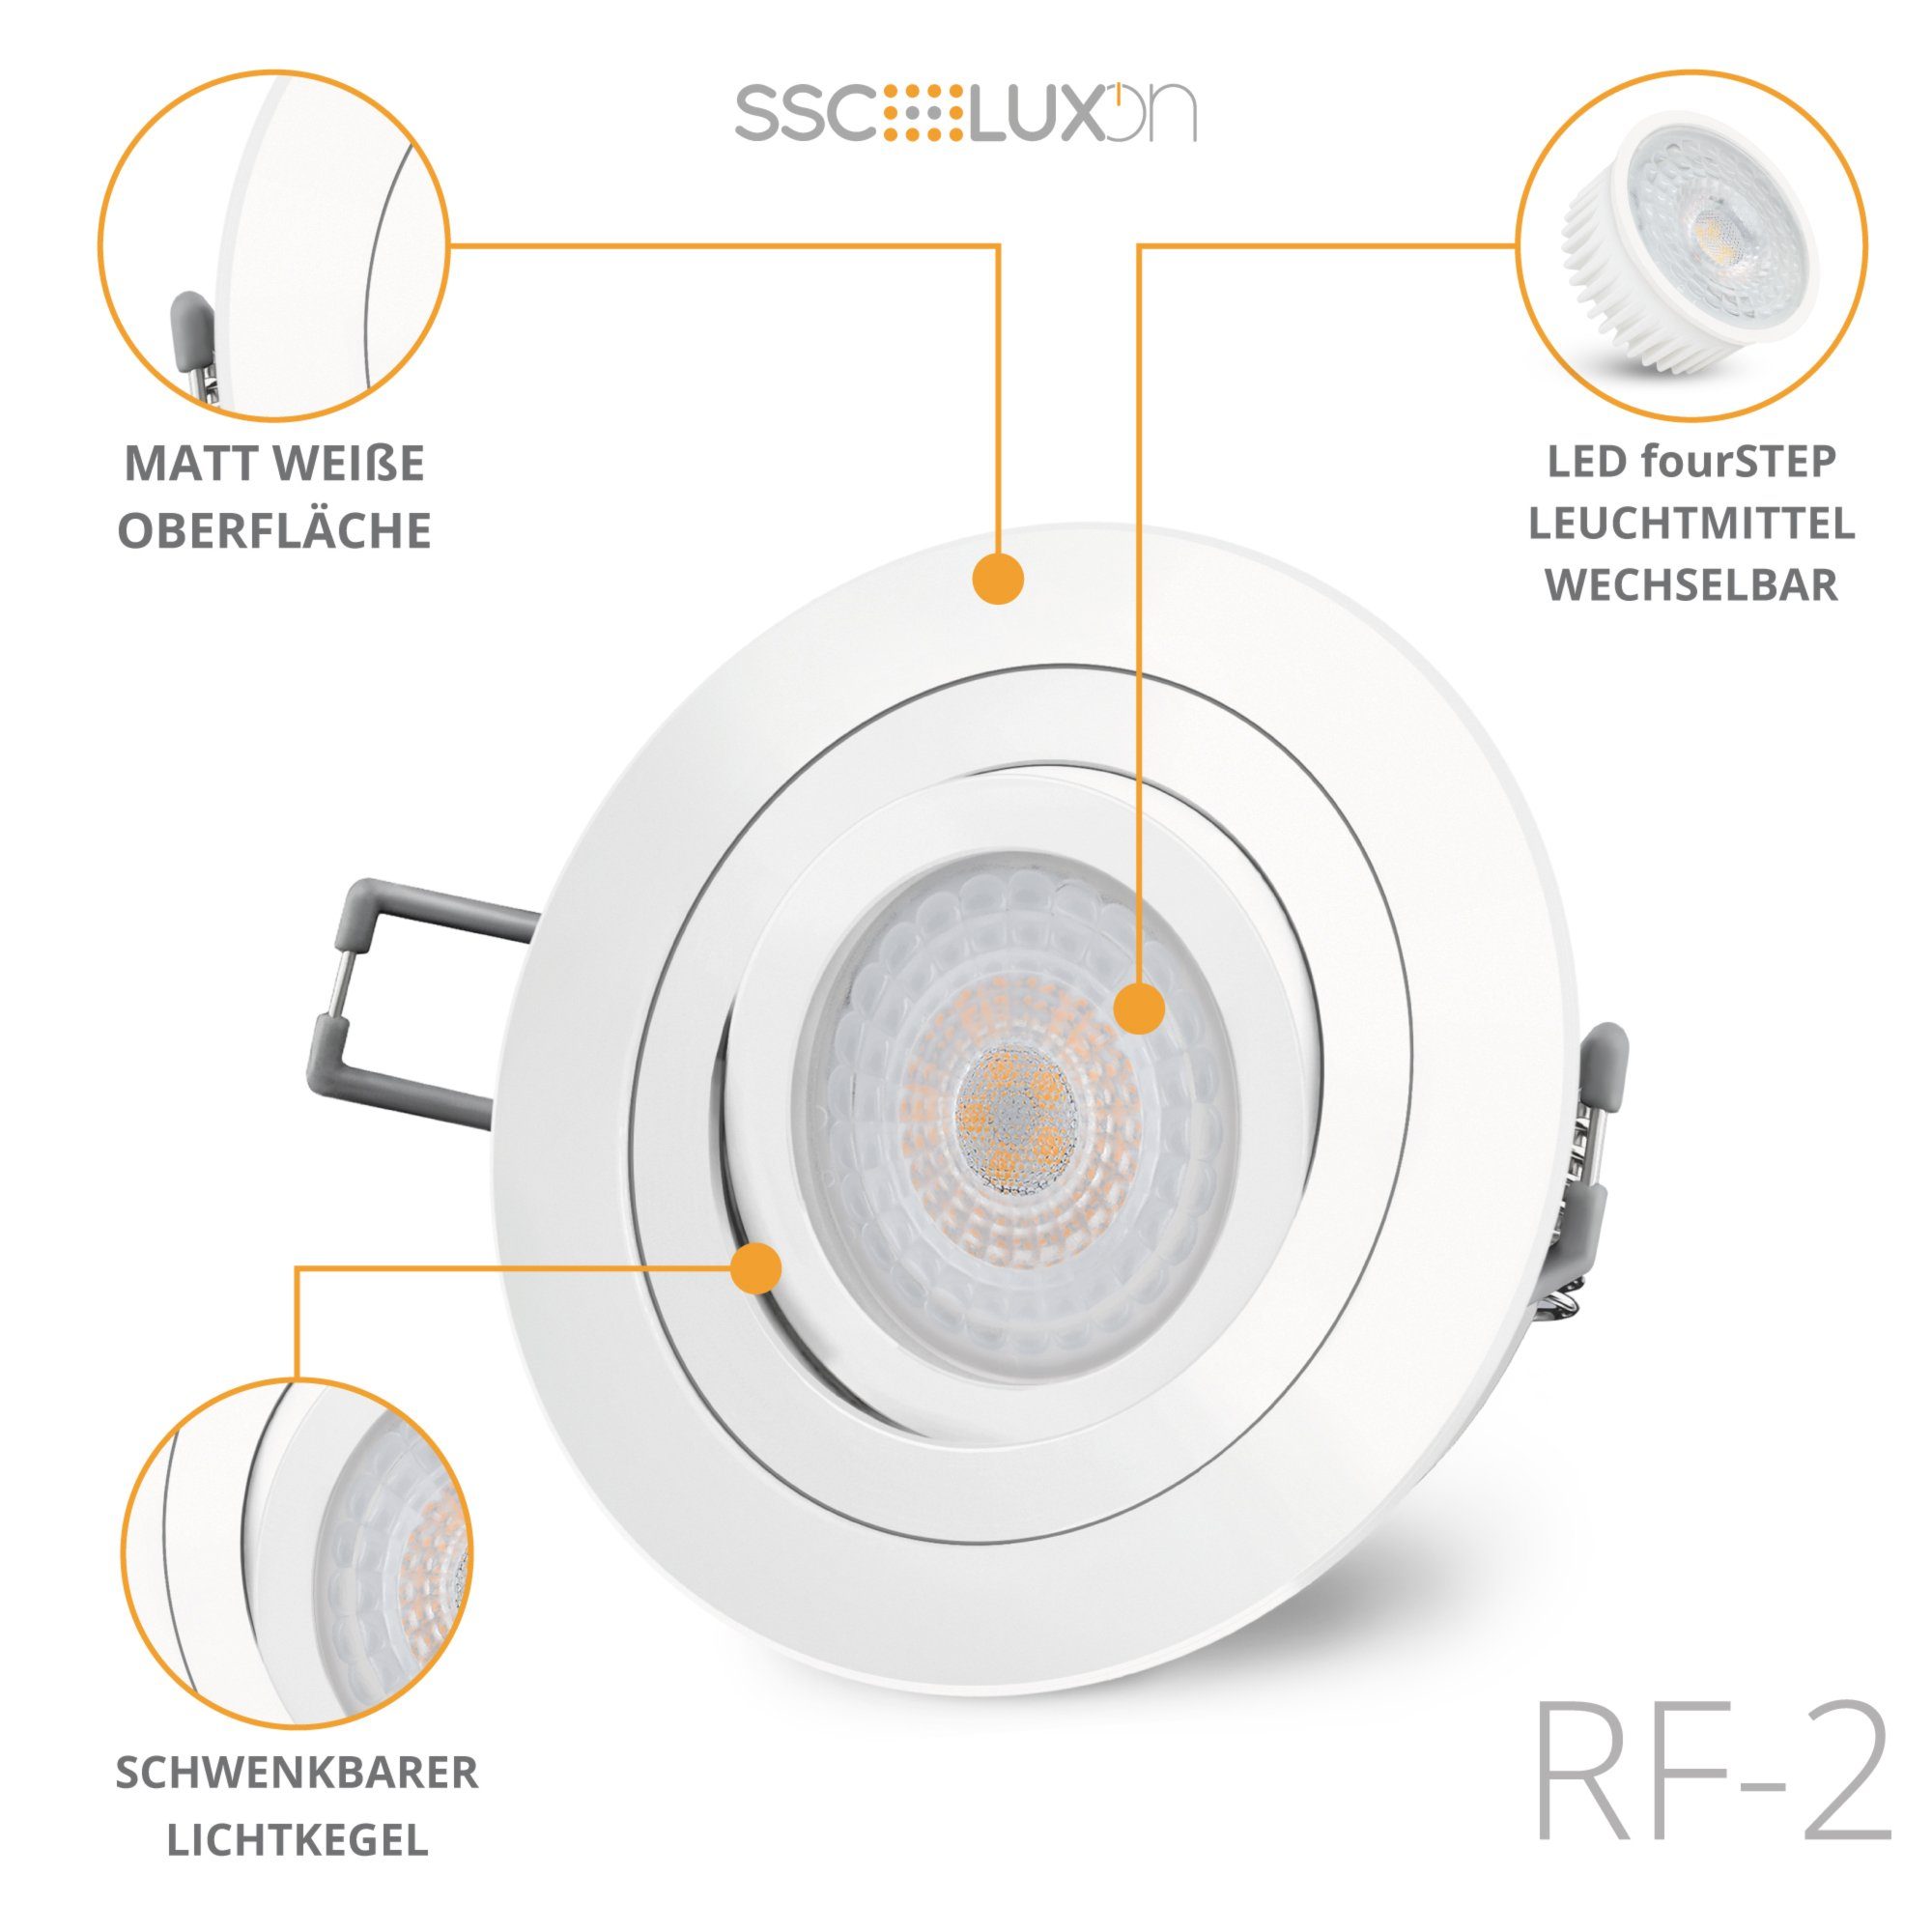 SSC-LUXon LED Einbaustrahler Einbauleuchte flach in RF-2 LED fourSTEP schwenkbar Modul & mit weiss